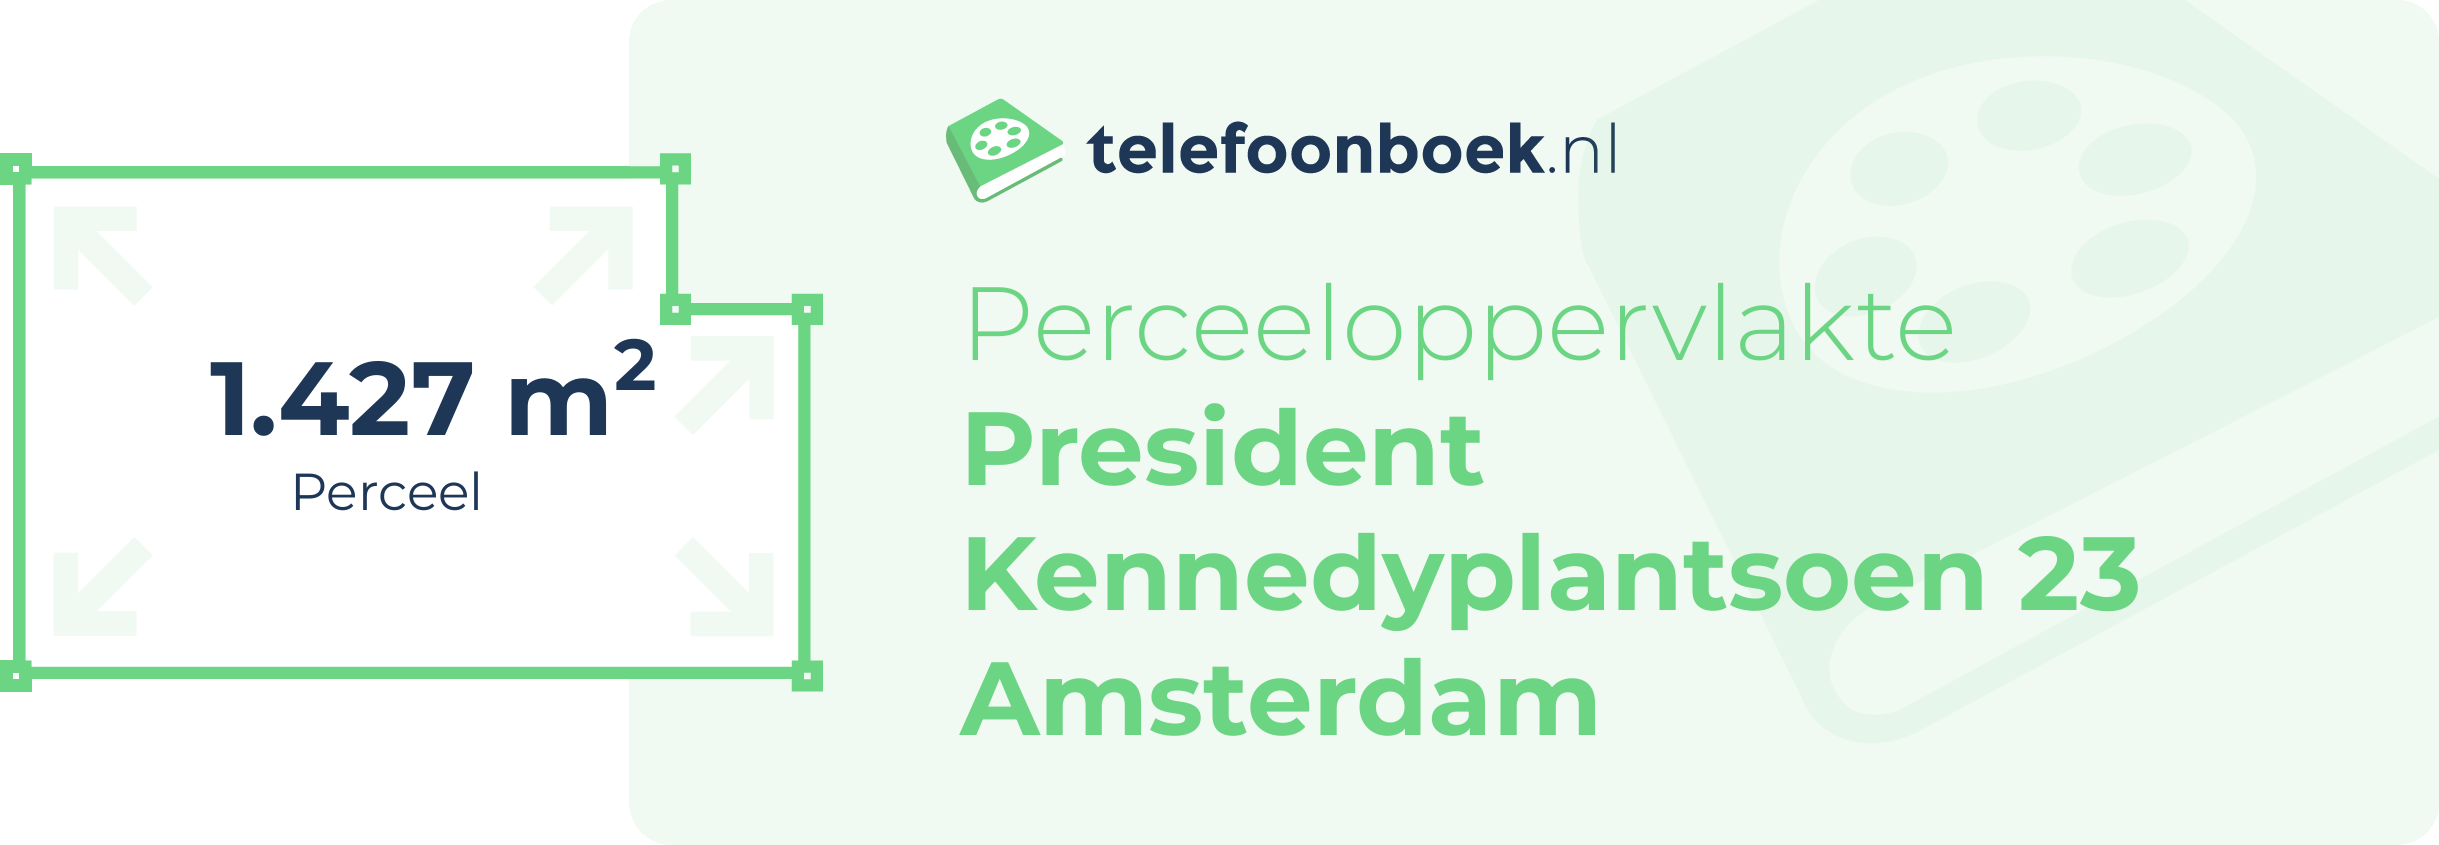 Perceeloppervlakte President Kennedyplantsoen 23 Amsterdam